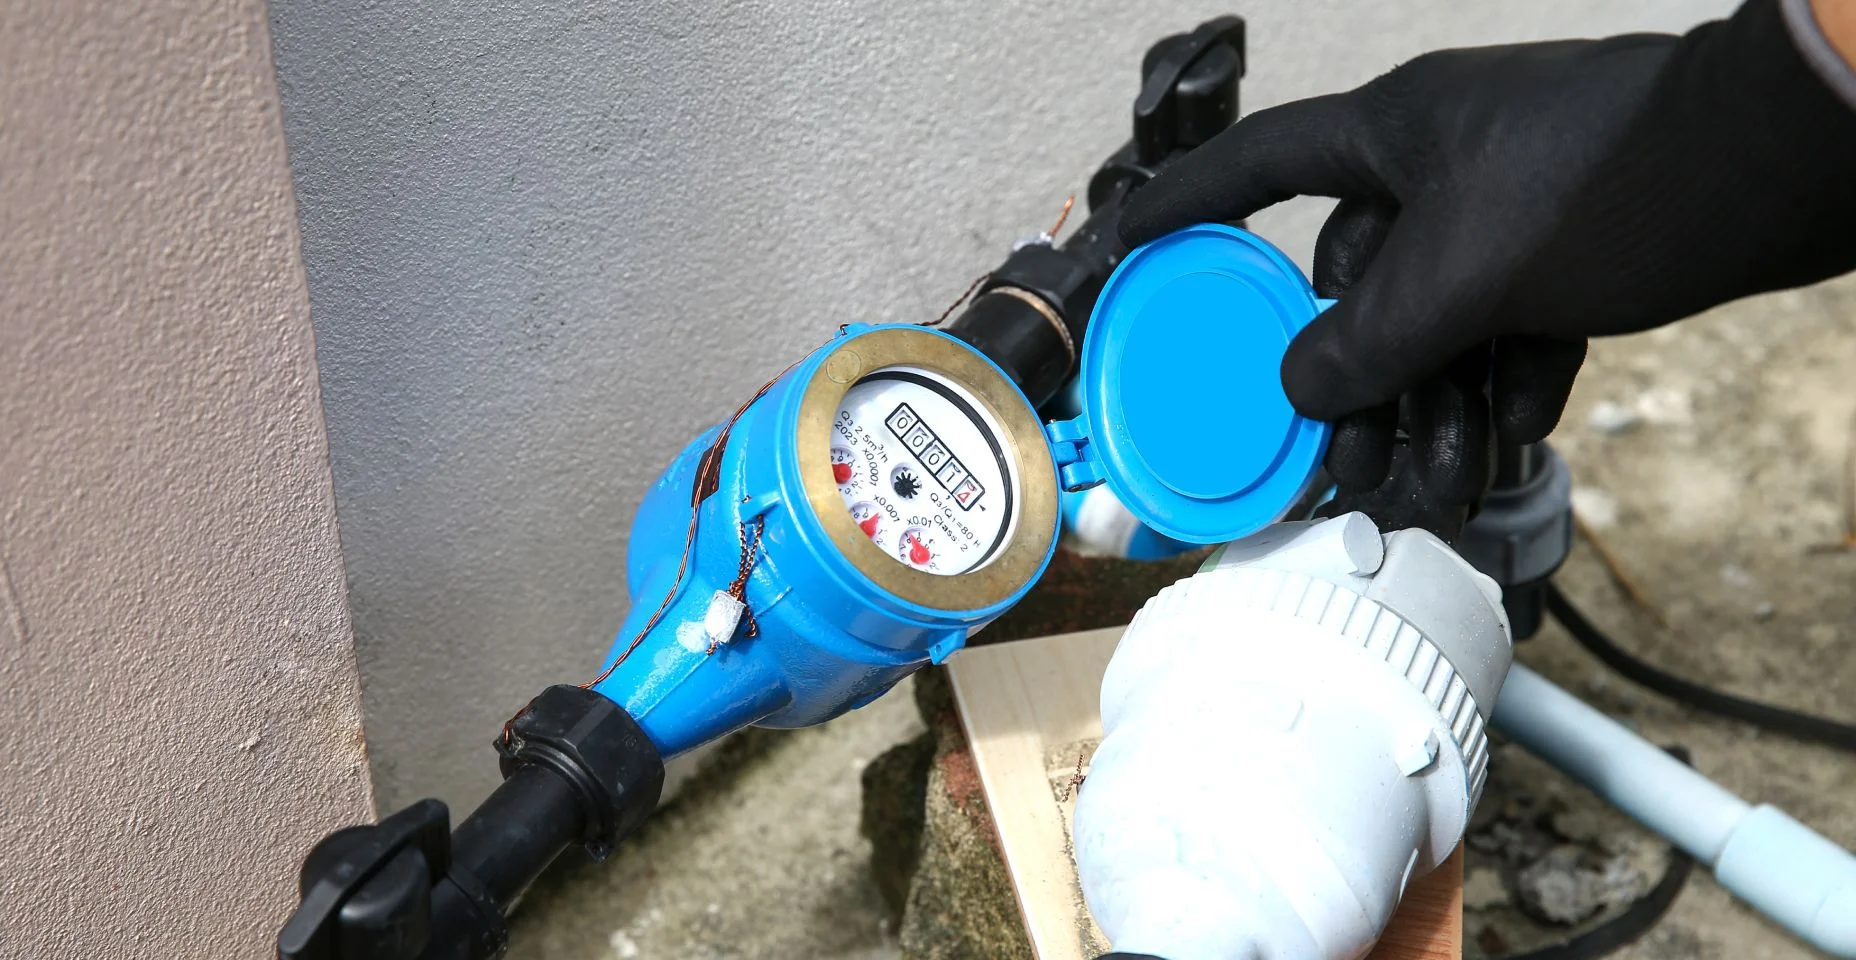 Técnico de encanador verifica a válvula do medidor de água da casa para pagamento de contas ou manutenção de serviço, conserta vazamento de queda do tanque de água da tubulação.